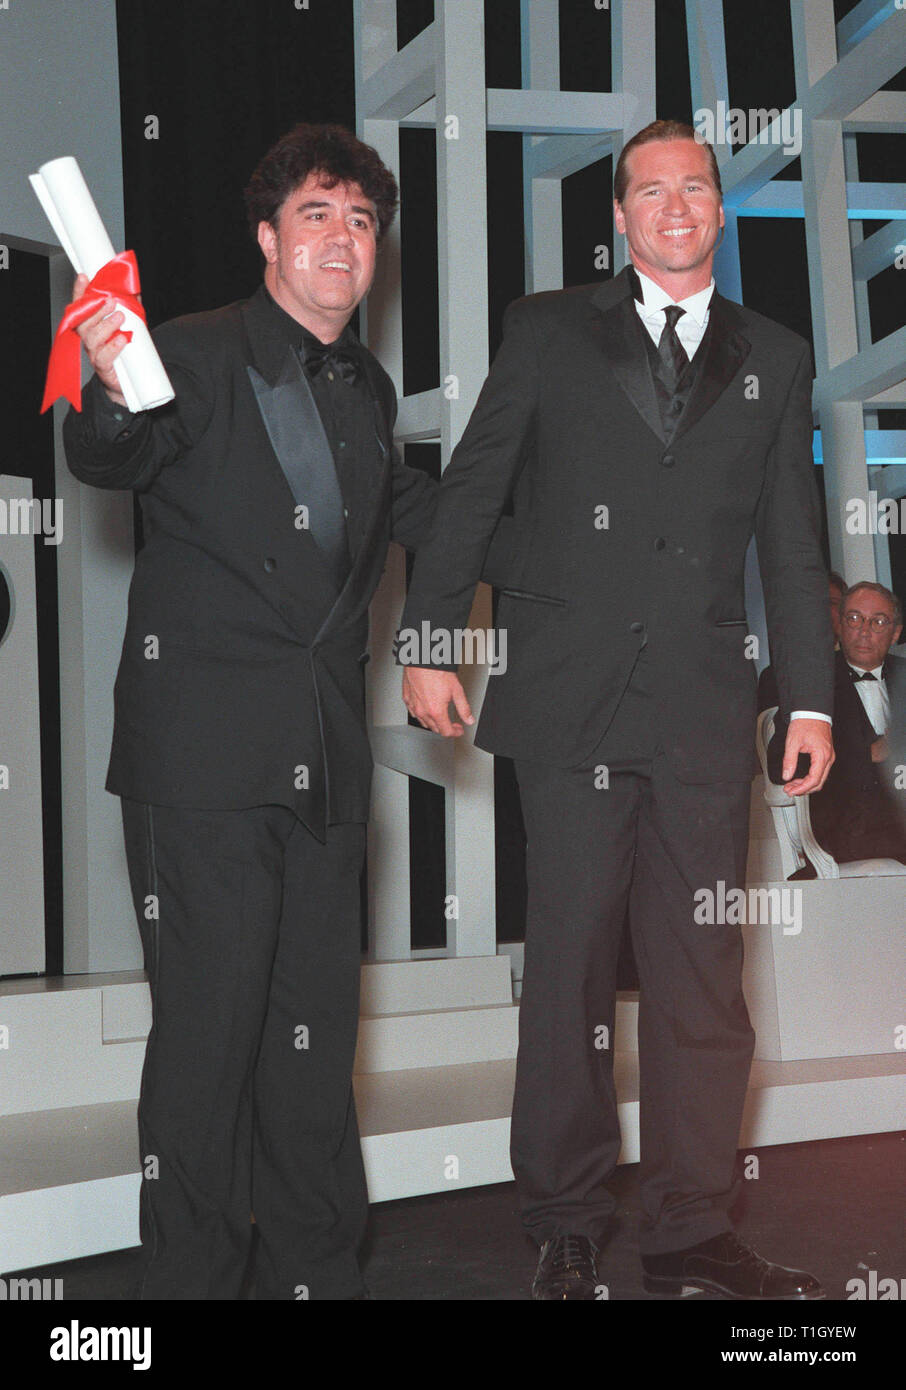 CANNES, Francia: 23 de mayo de 1999: El director español Pedro Almodóvar (izquierda) - Ganador del premio al Mejor Director - con el actor Val Kilmer en la 52ª edición del Festival de Cine de Cannes. © Paul Smith / Featureflash Foto de stock